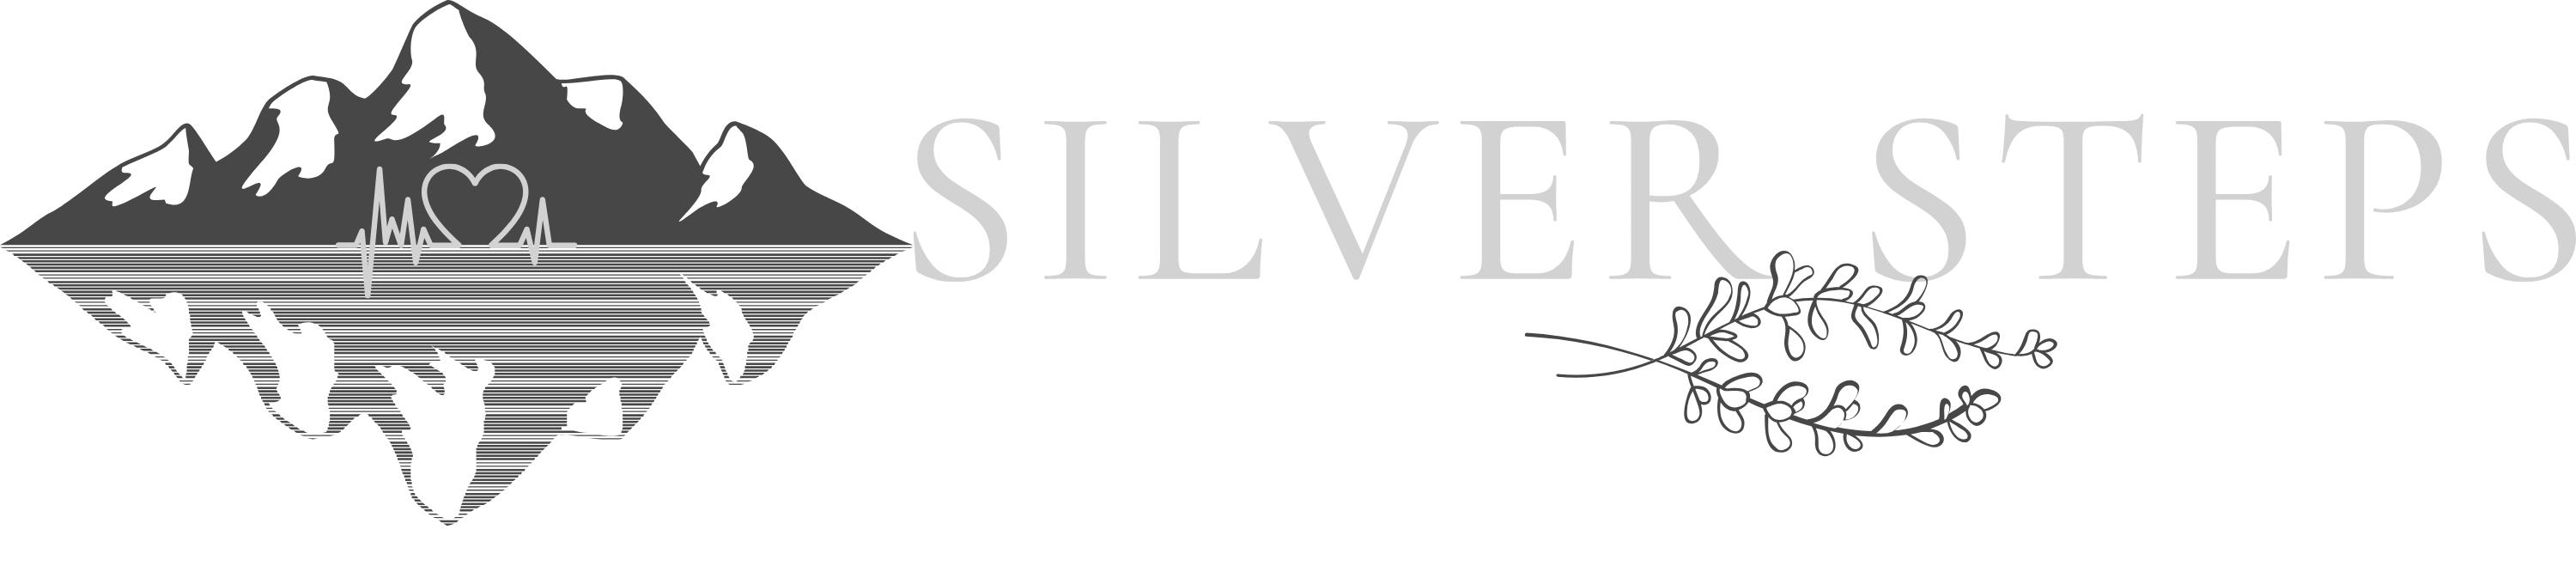 Silver Steps LLC at Spokane, WA